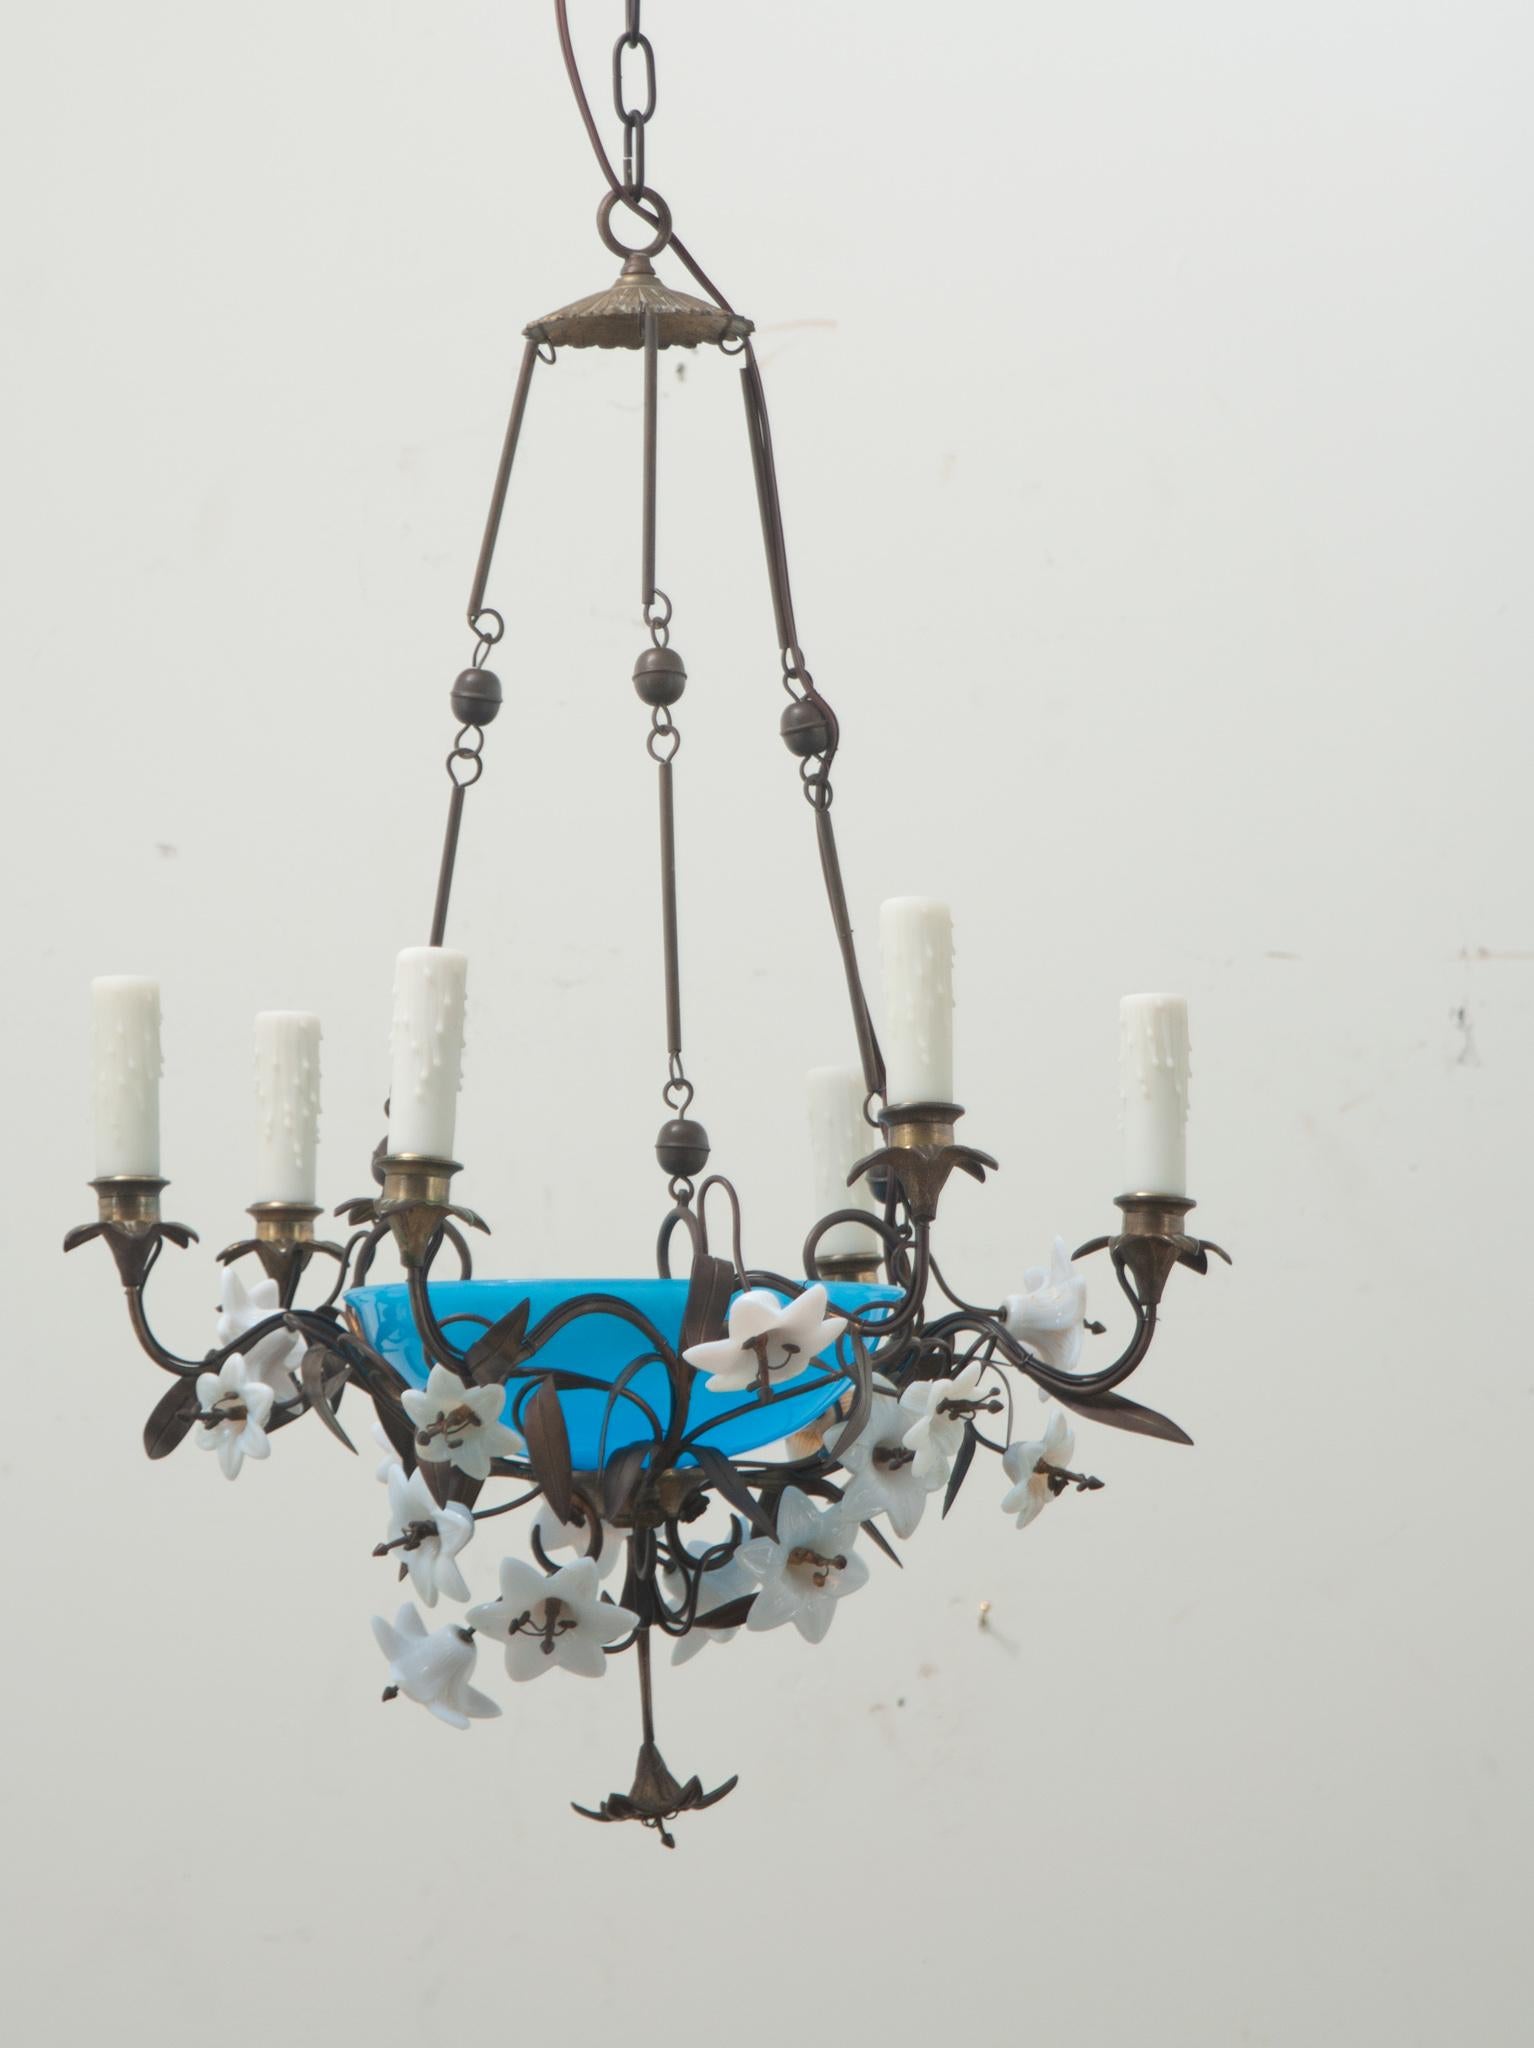 Un lustre floral vintage à 7 lumières fabriqué en France. Le luminaire, probablement trouvé dans une Church's, comporte une coupelle en verre opalin bleu vif avec une ampoule à l'intérieur, entourée de fleurs en verre au lait et en bronze, ainsi que